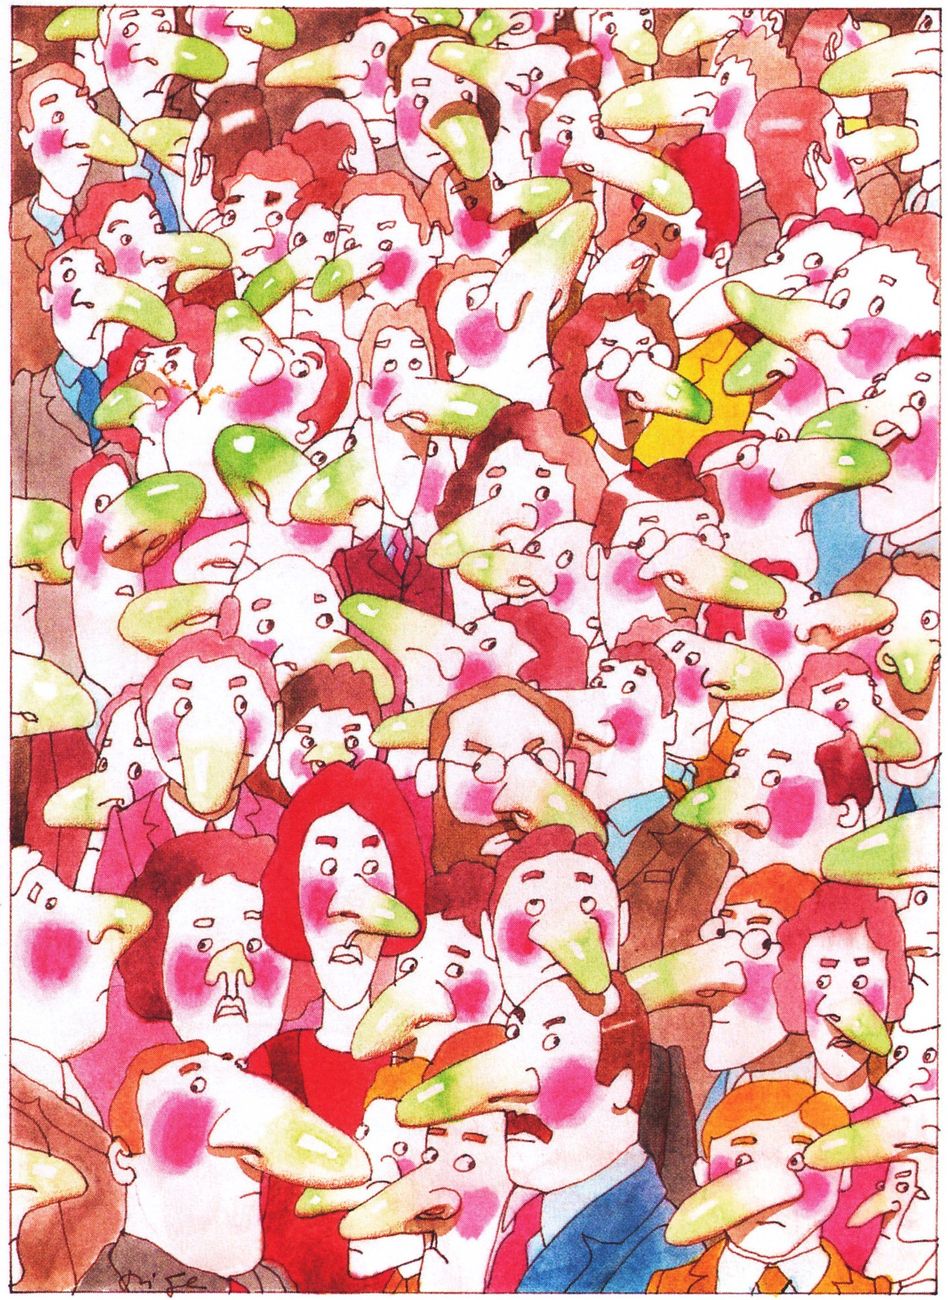 Aldo Di Gennaro, Cattivi odori, illustrazione per Salve, anni '80